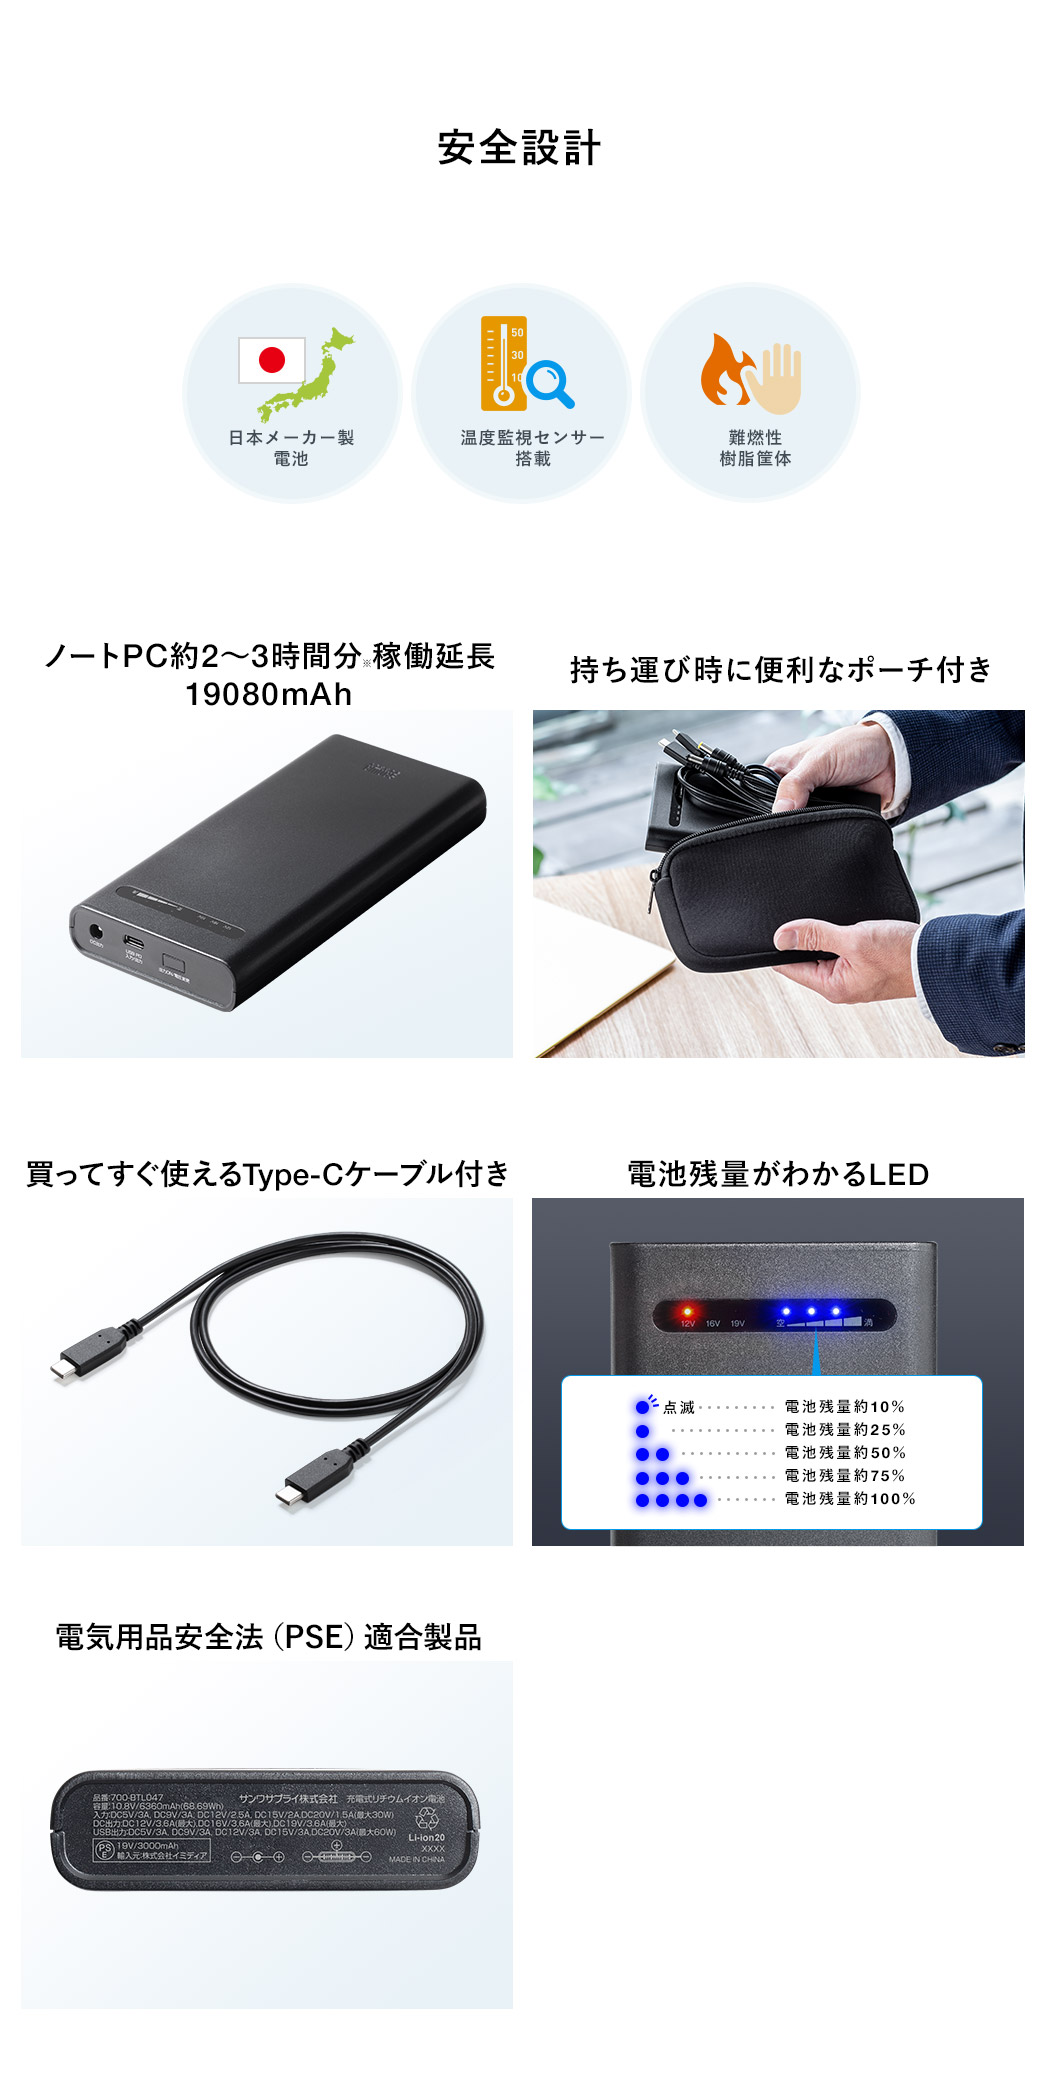 様々なパソコンを充電可能 USB PD出力/DC出力両対応